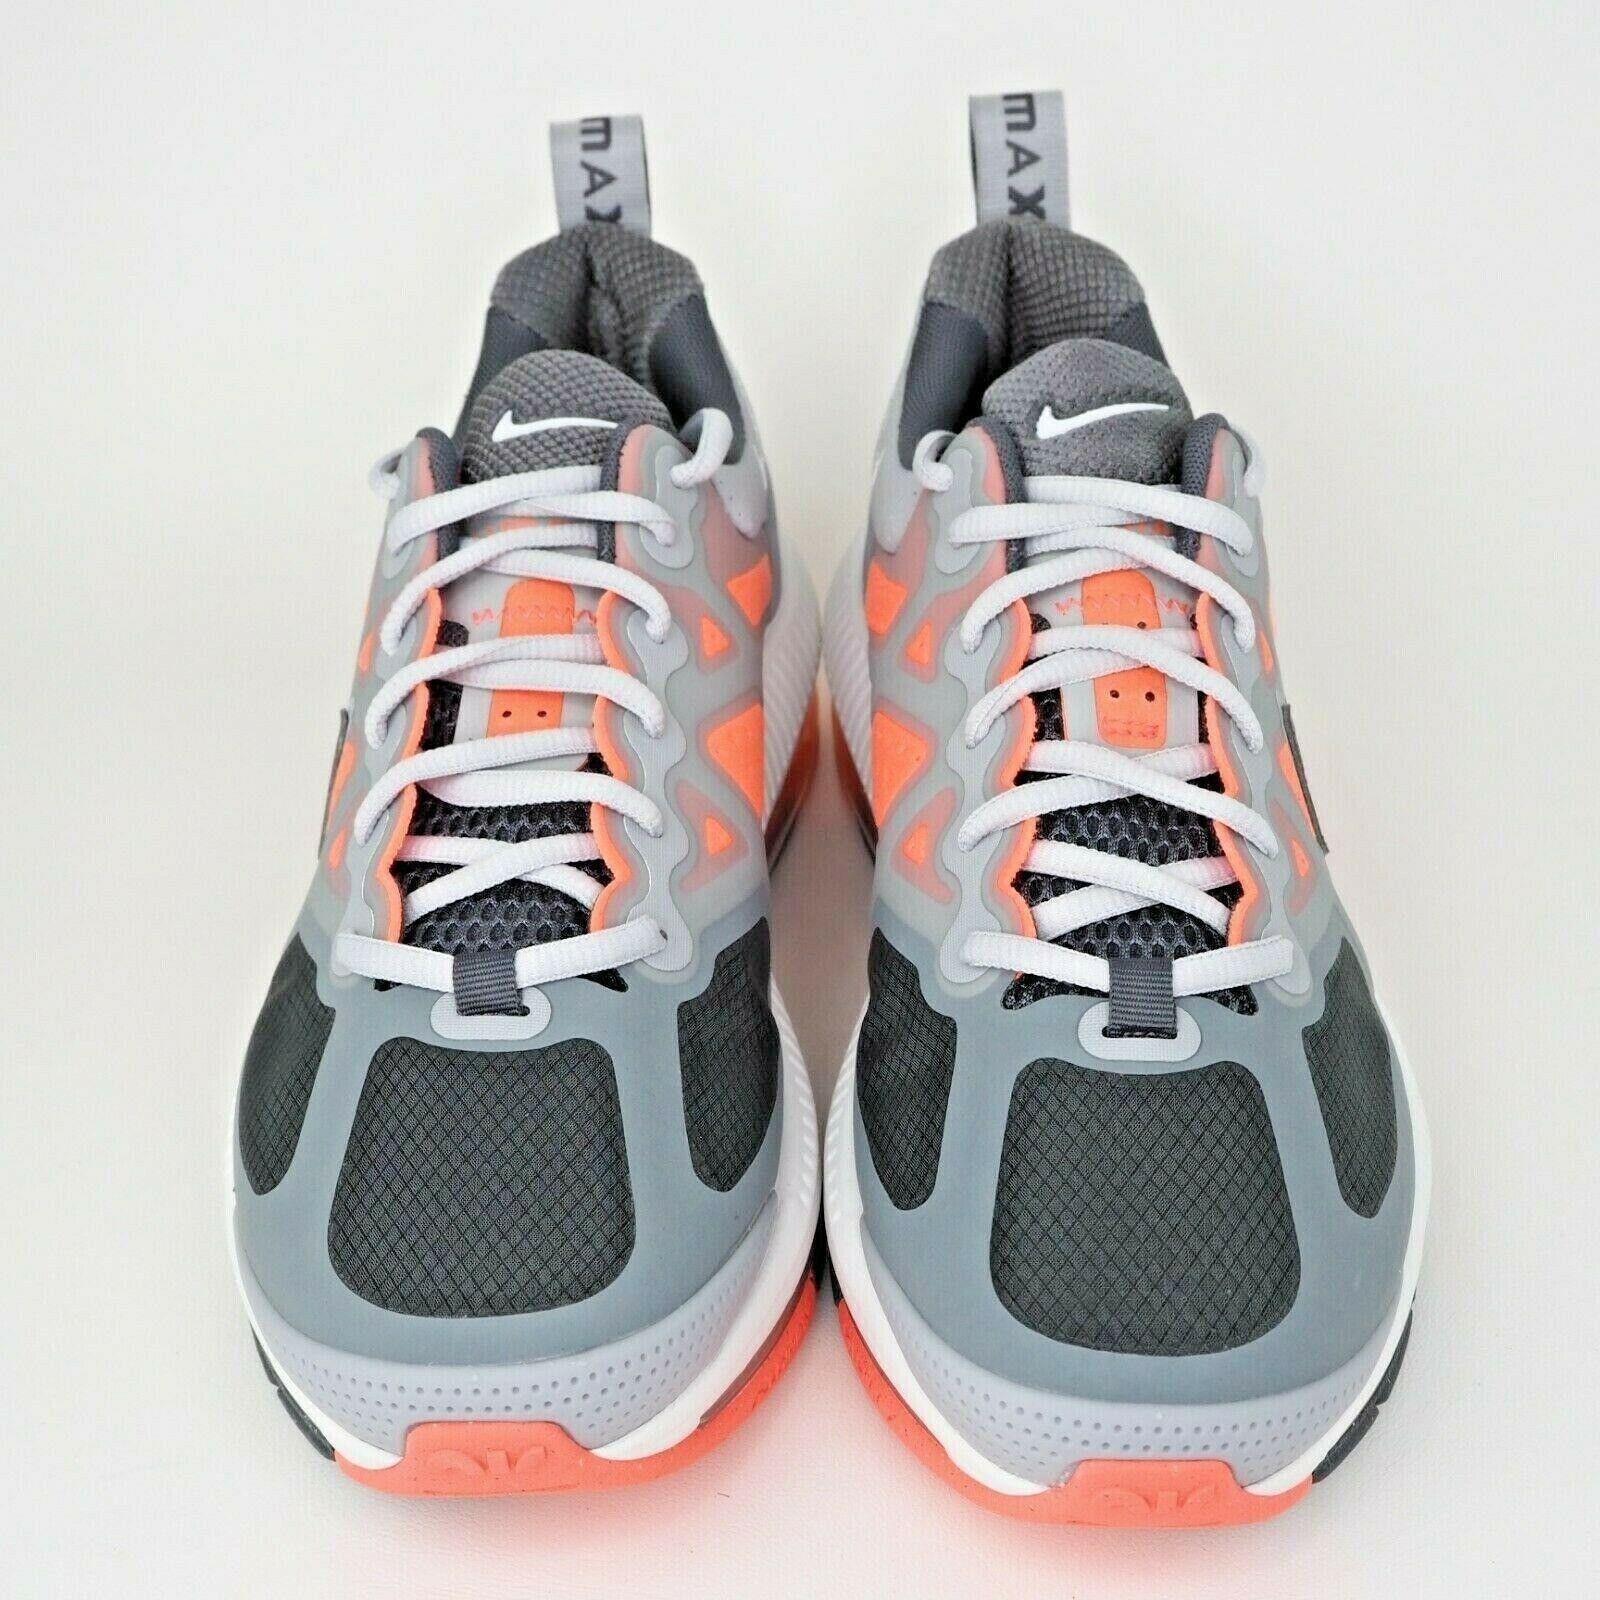 Nike shoes Air Max - Gray 2